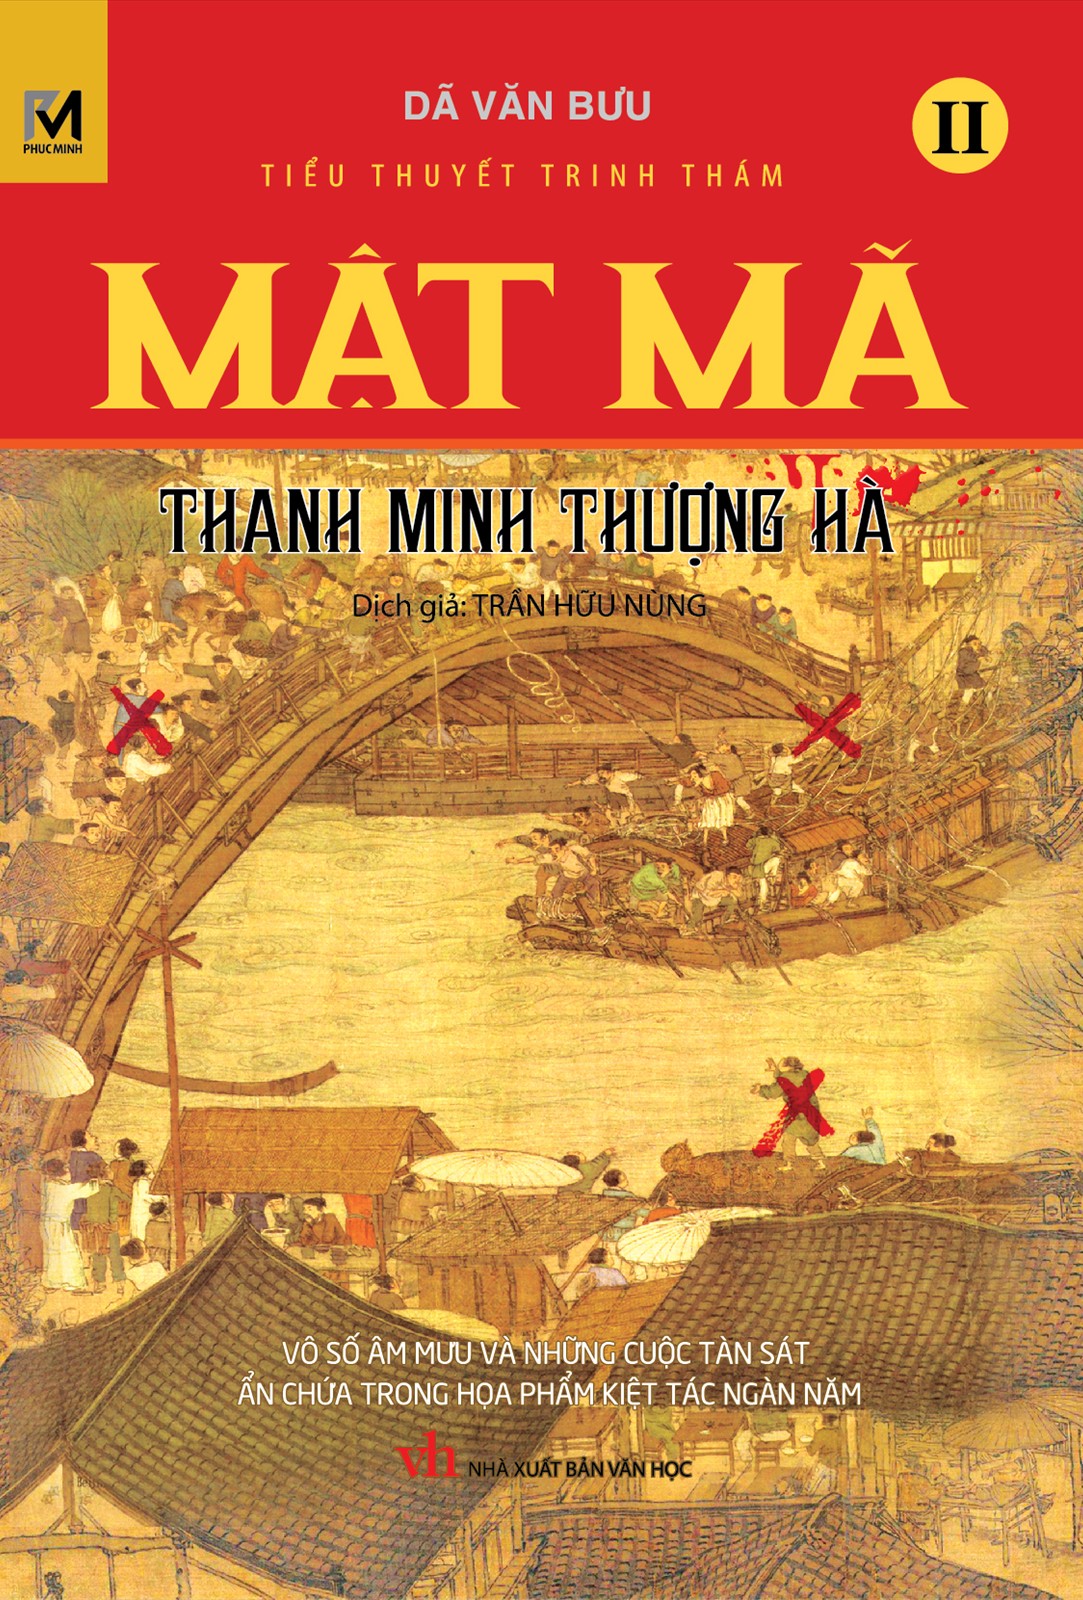 Mật Mã Thanh Minh Thượng Hà Tập 2 - Dã Văn Bưu